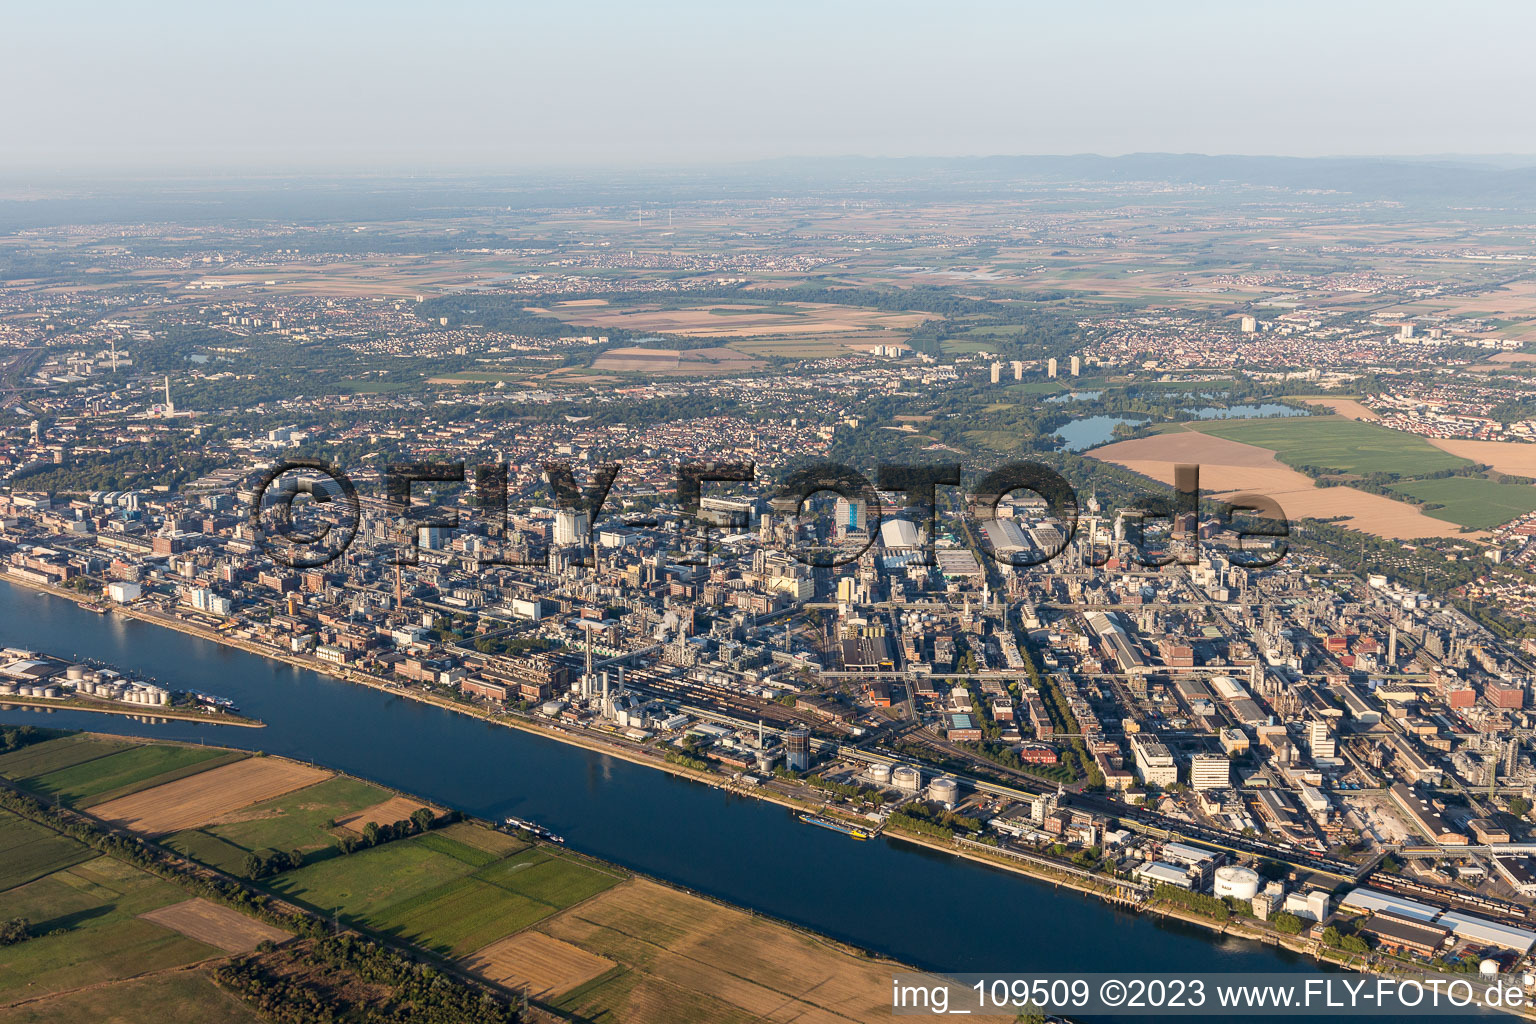 Luftaufnahme von Ortsteil BASF in Ludwigshafen am Rhein im Bundesland Rheinland-Pfalz, Deutschland